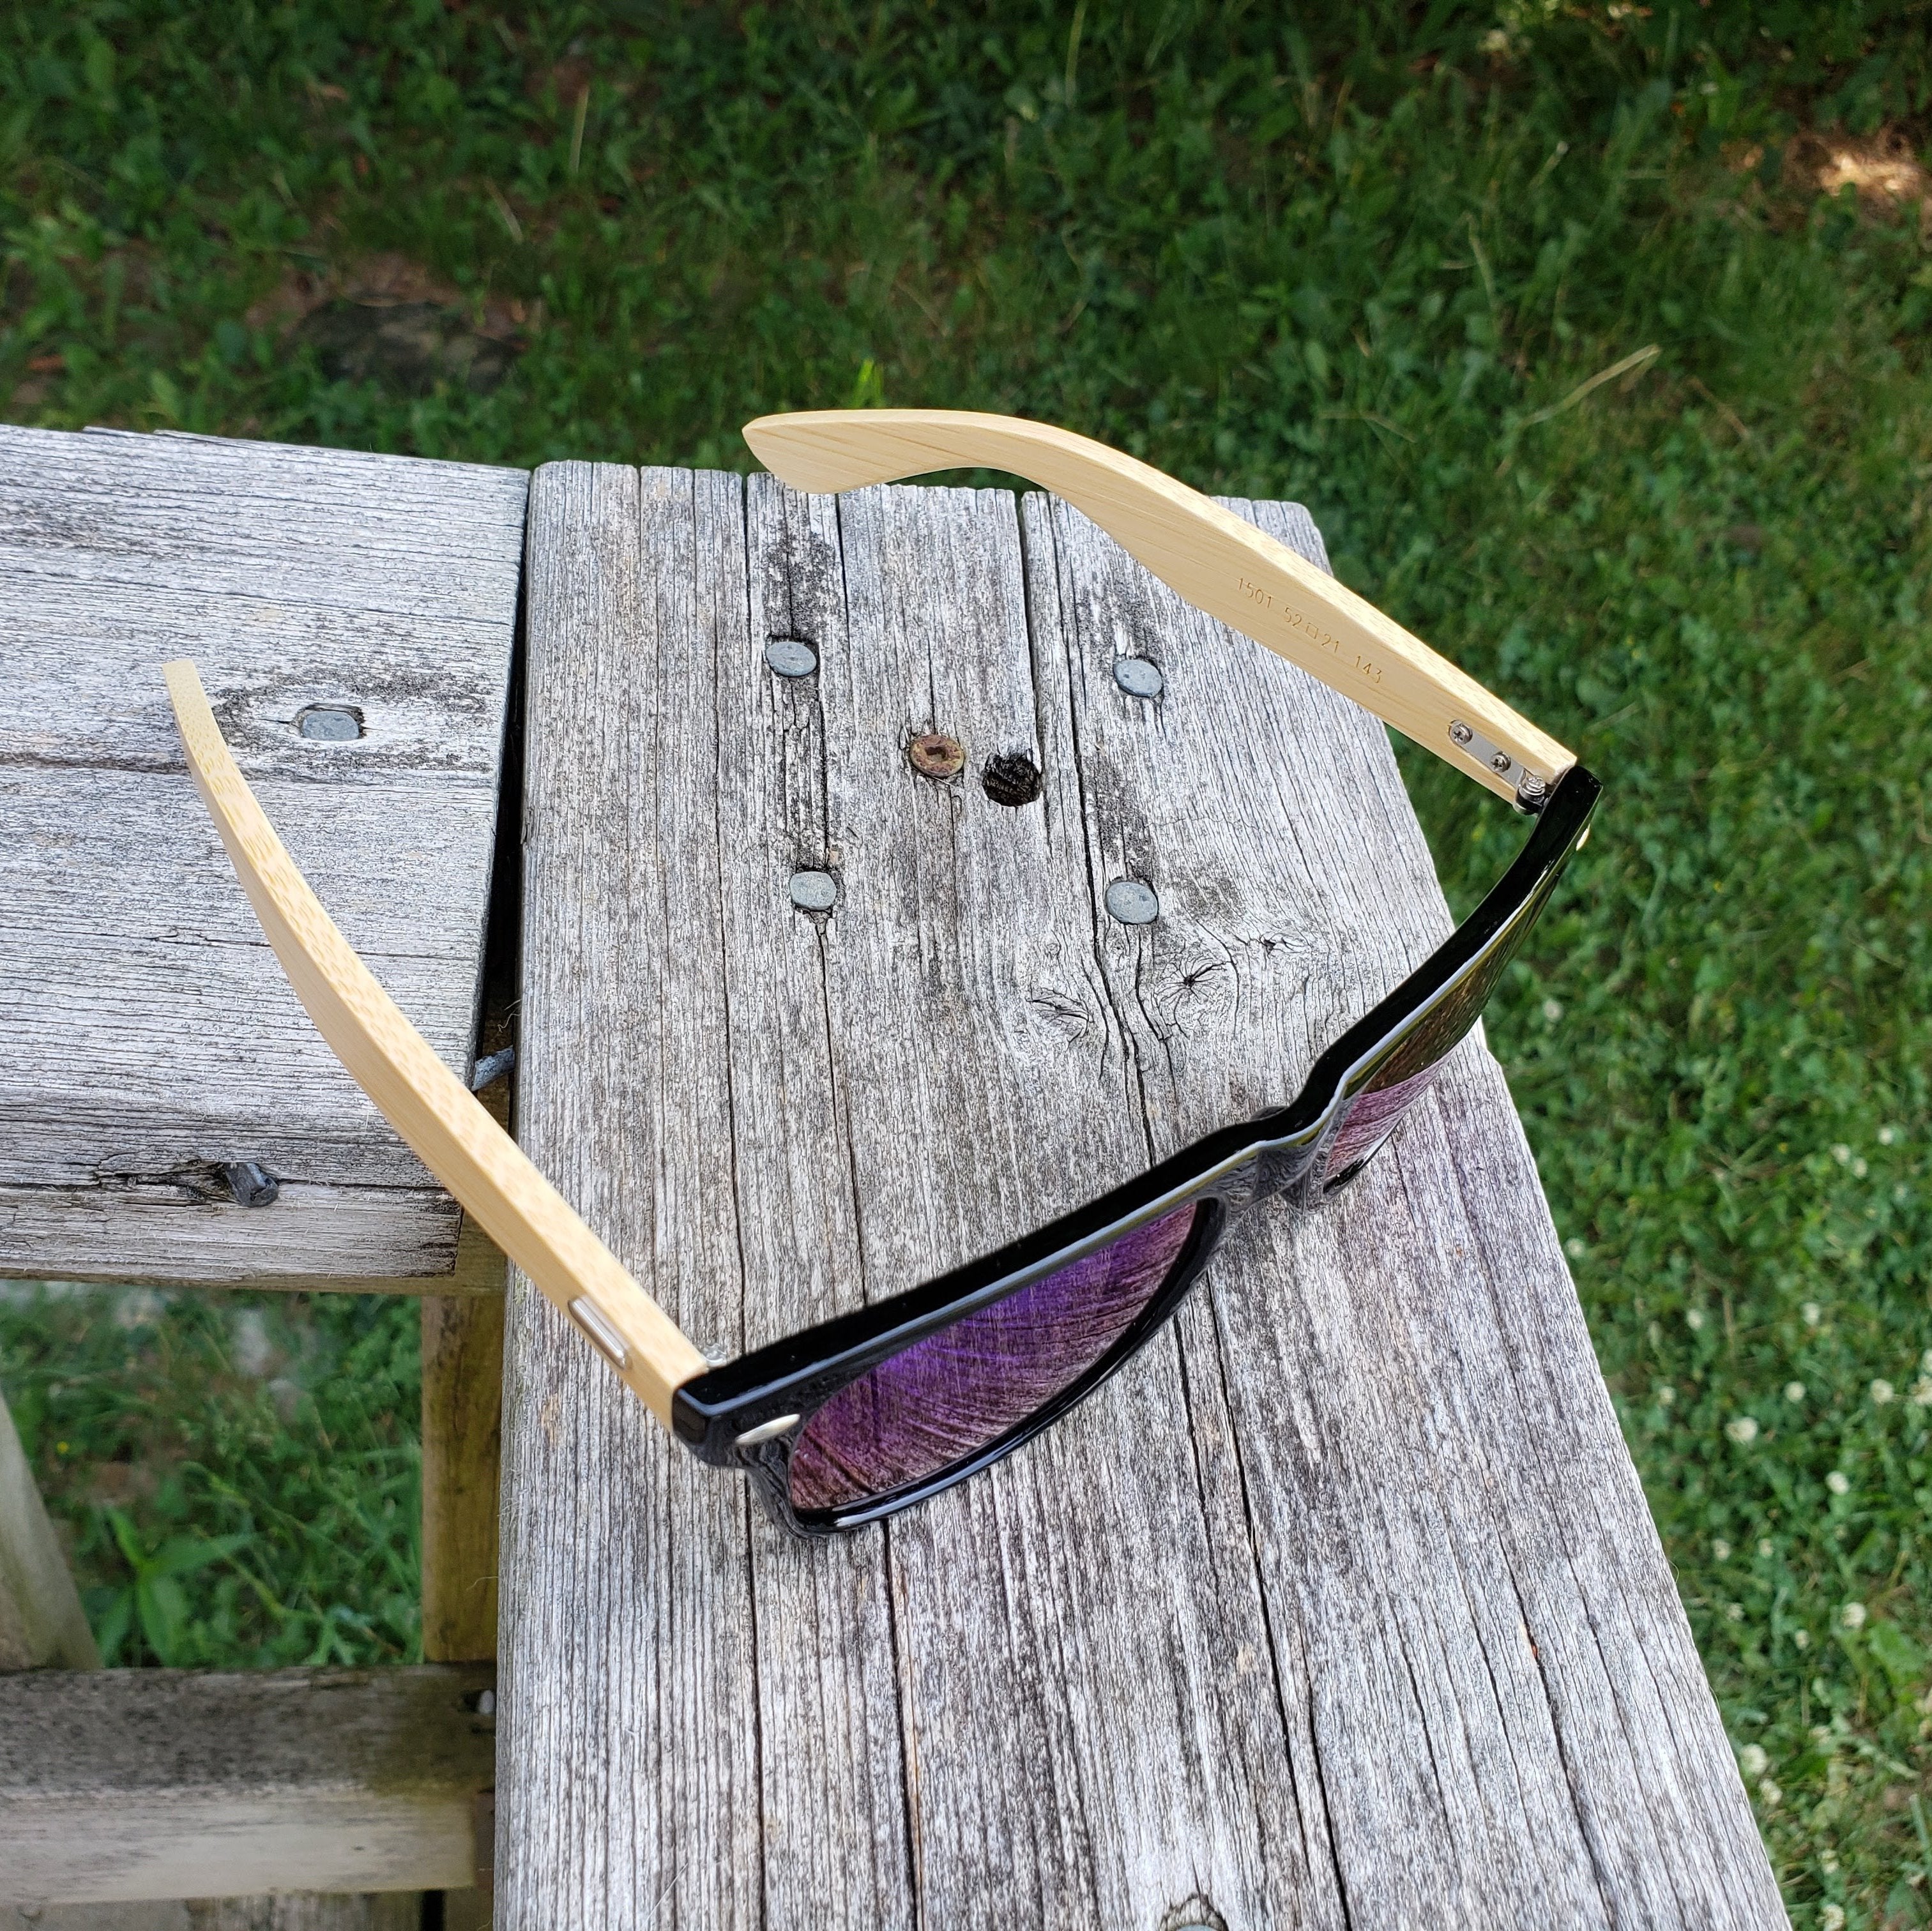 Sunglasses - Bamboo/Black-Design Blanks